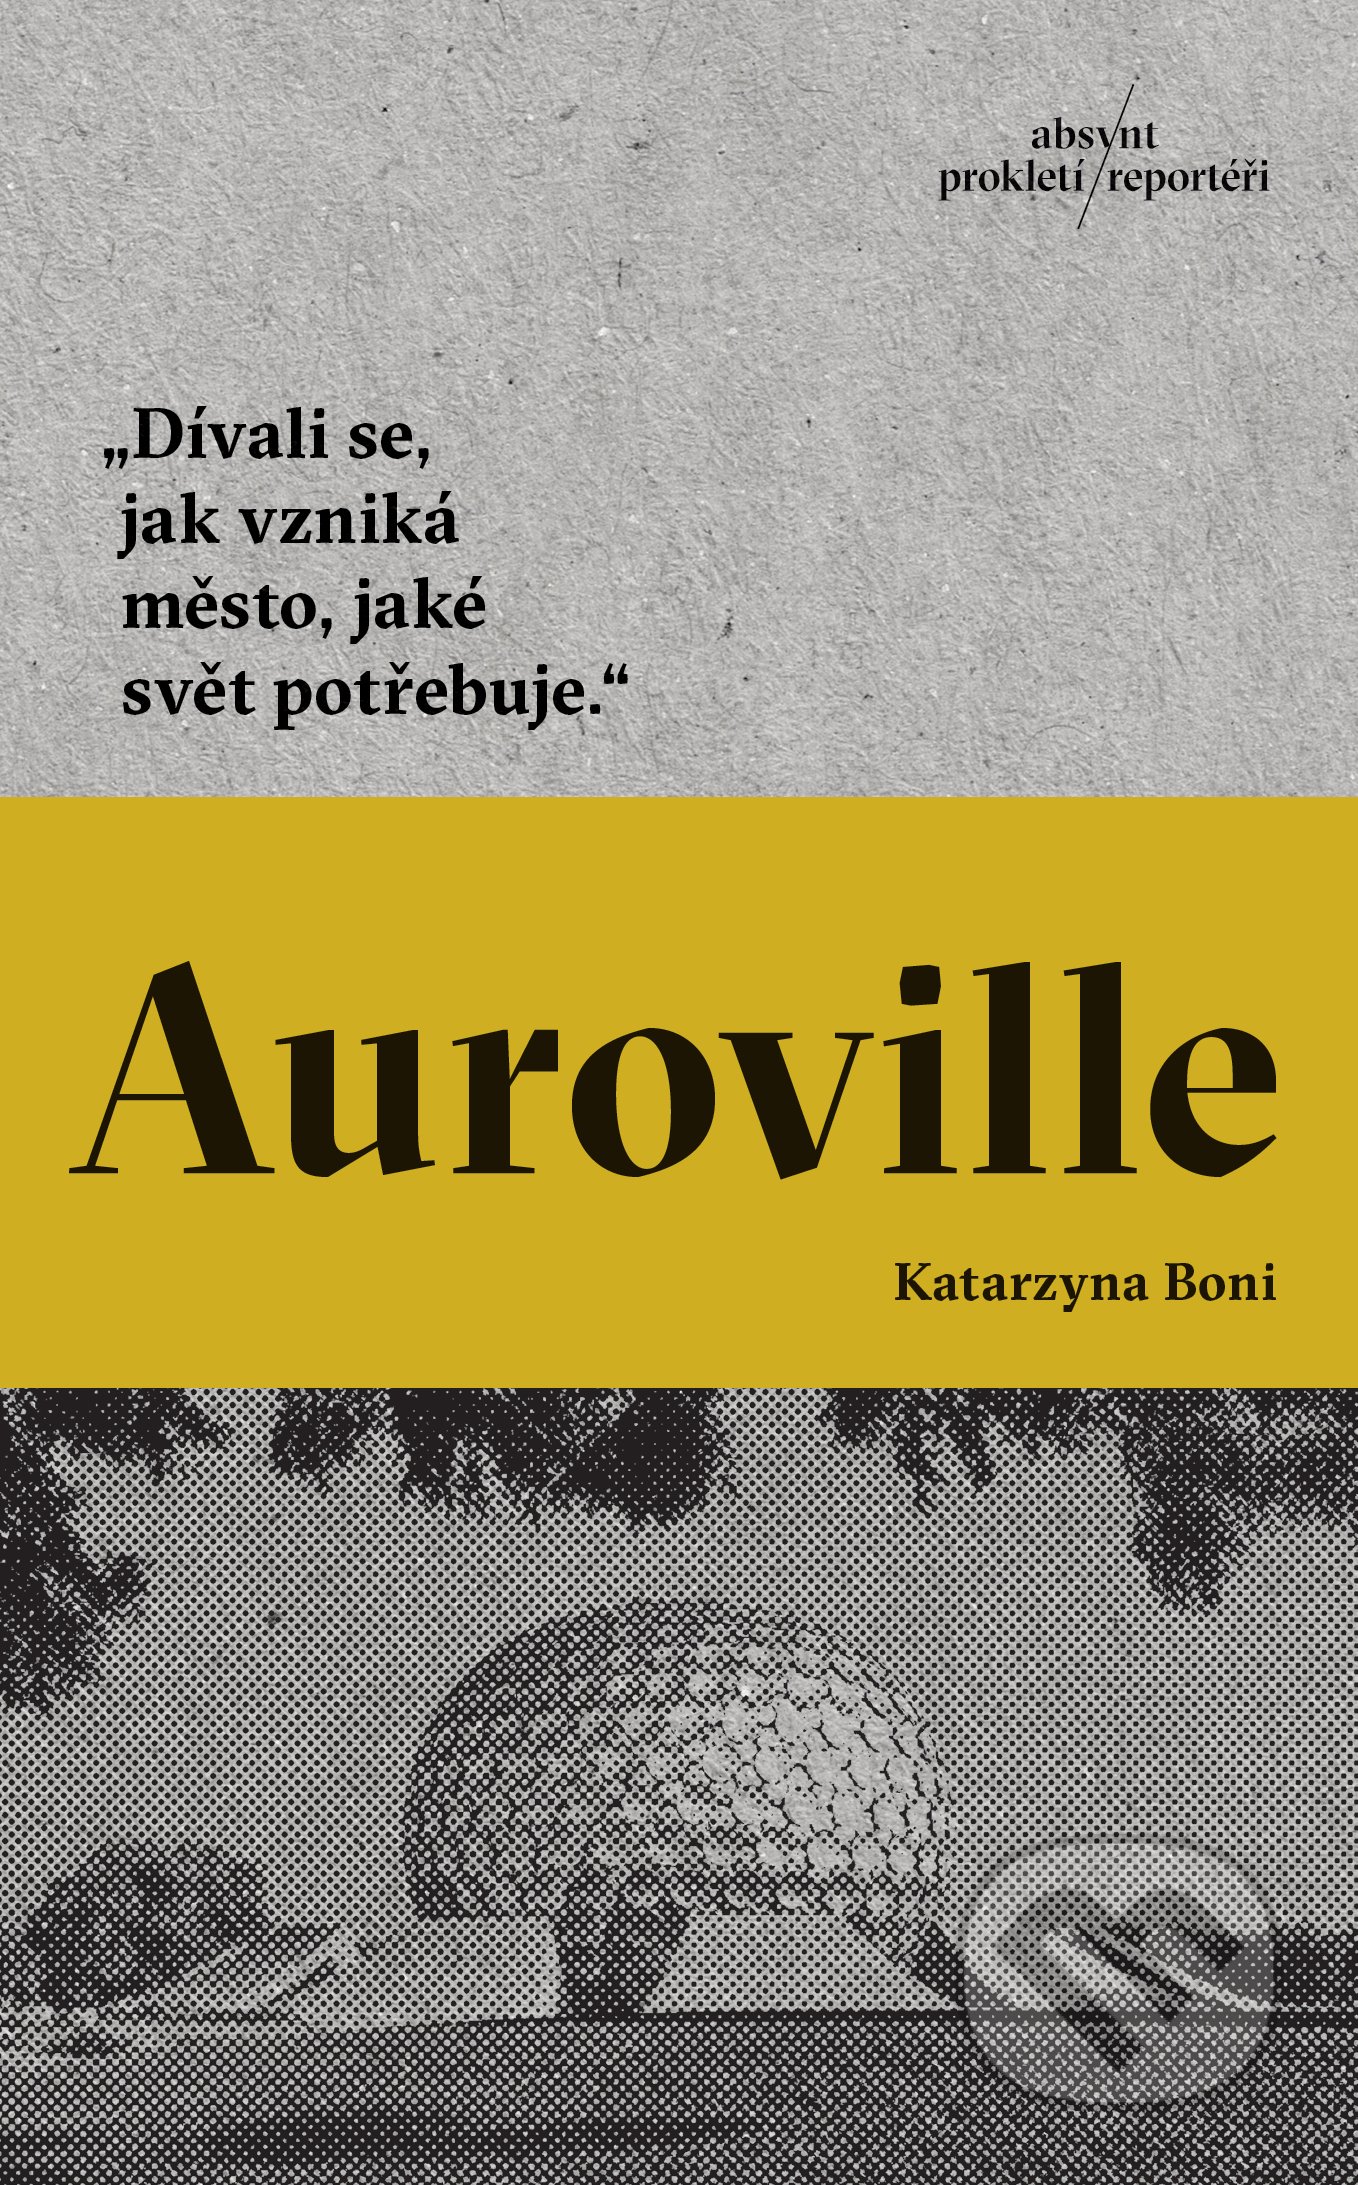 Auroville - Katarzyna Boni, Absynt, 2022